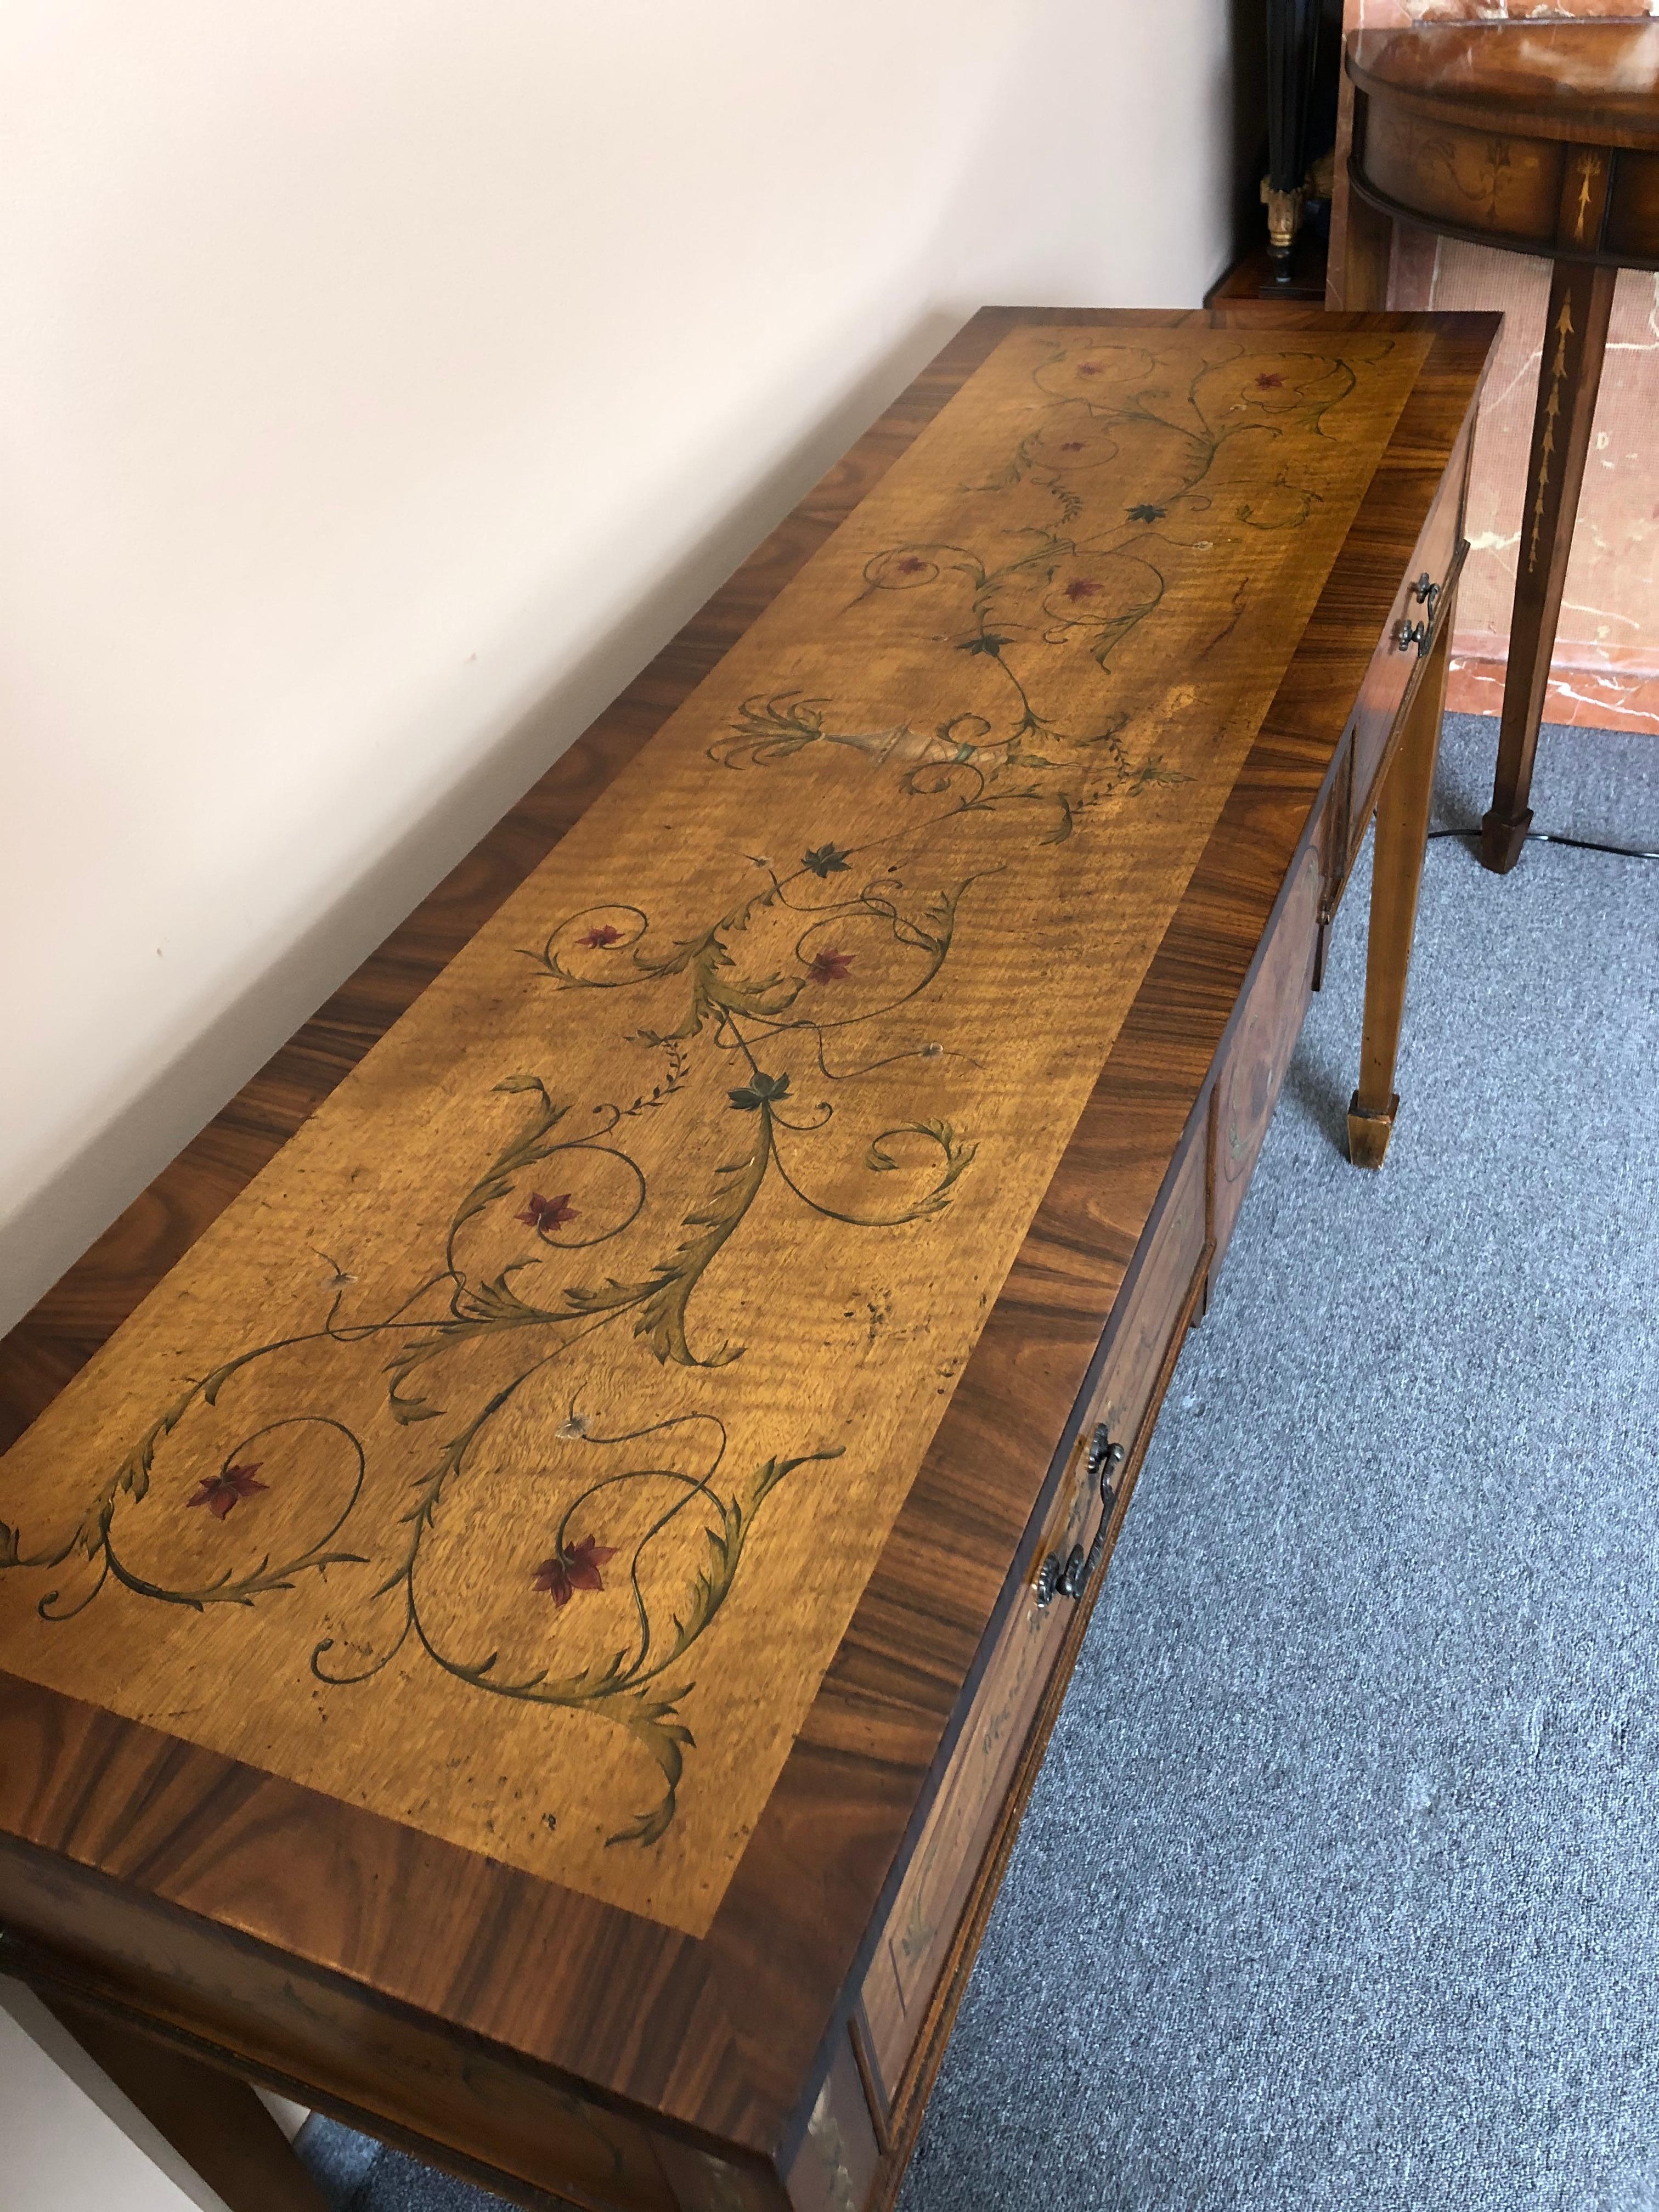 Une belle table console rectangulaire de style Adam en noyer à bandes et incrustations de bois mélangés, avec de jolis embellissements peints à la main.